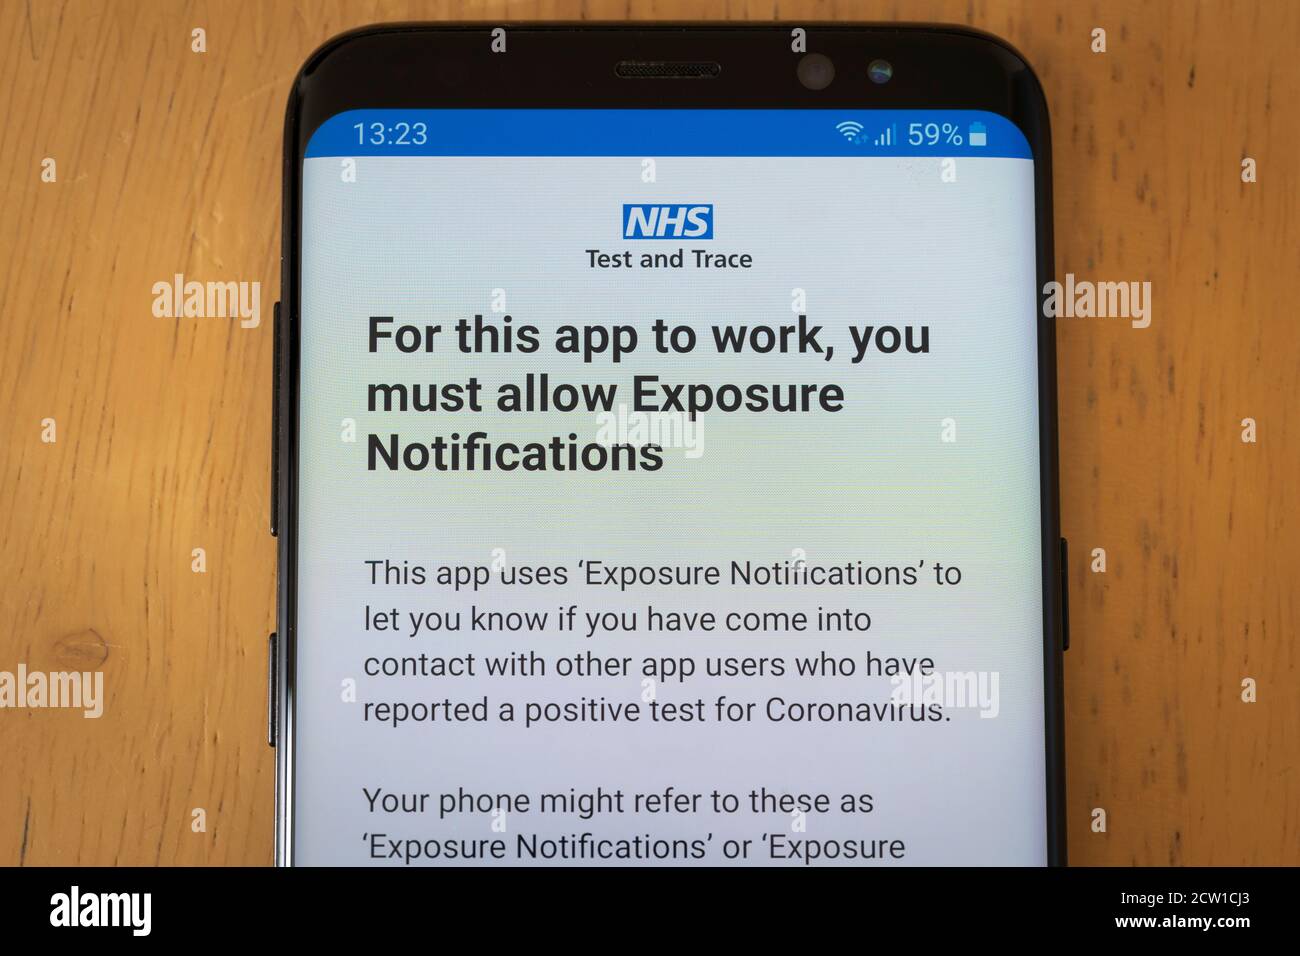 NHS Test and Trace App auf einem Smartphone mit einem Anforderungsbildschirm für Berechtigungen zum Aktivieren von Belichtungsbenachrichtigungen für Covid-19. Bedenken zum Datenschutz Stockfoto